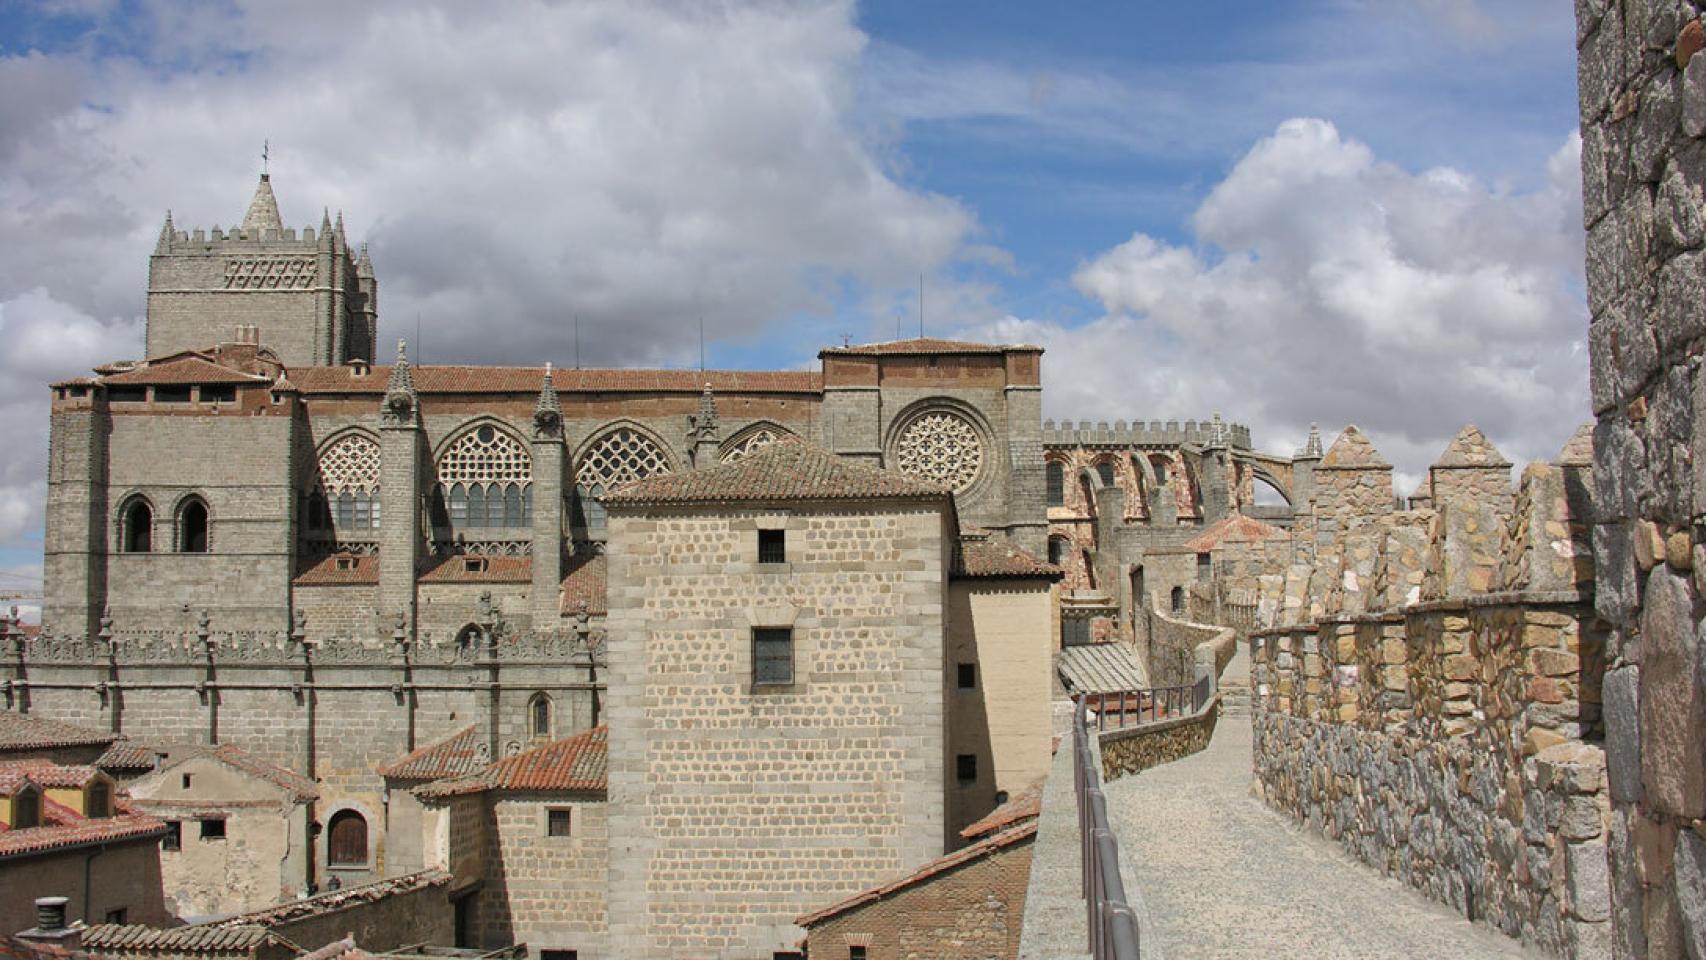 Vista lateral de la Catedral abulense, adosada a la muralla, que es al tiempo una fortaleza, ya que forma parte de la estructura defensiva militar de Ávila.